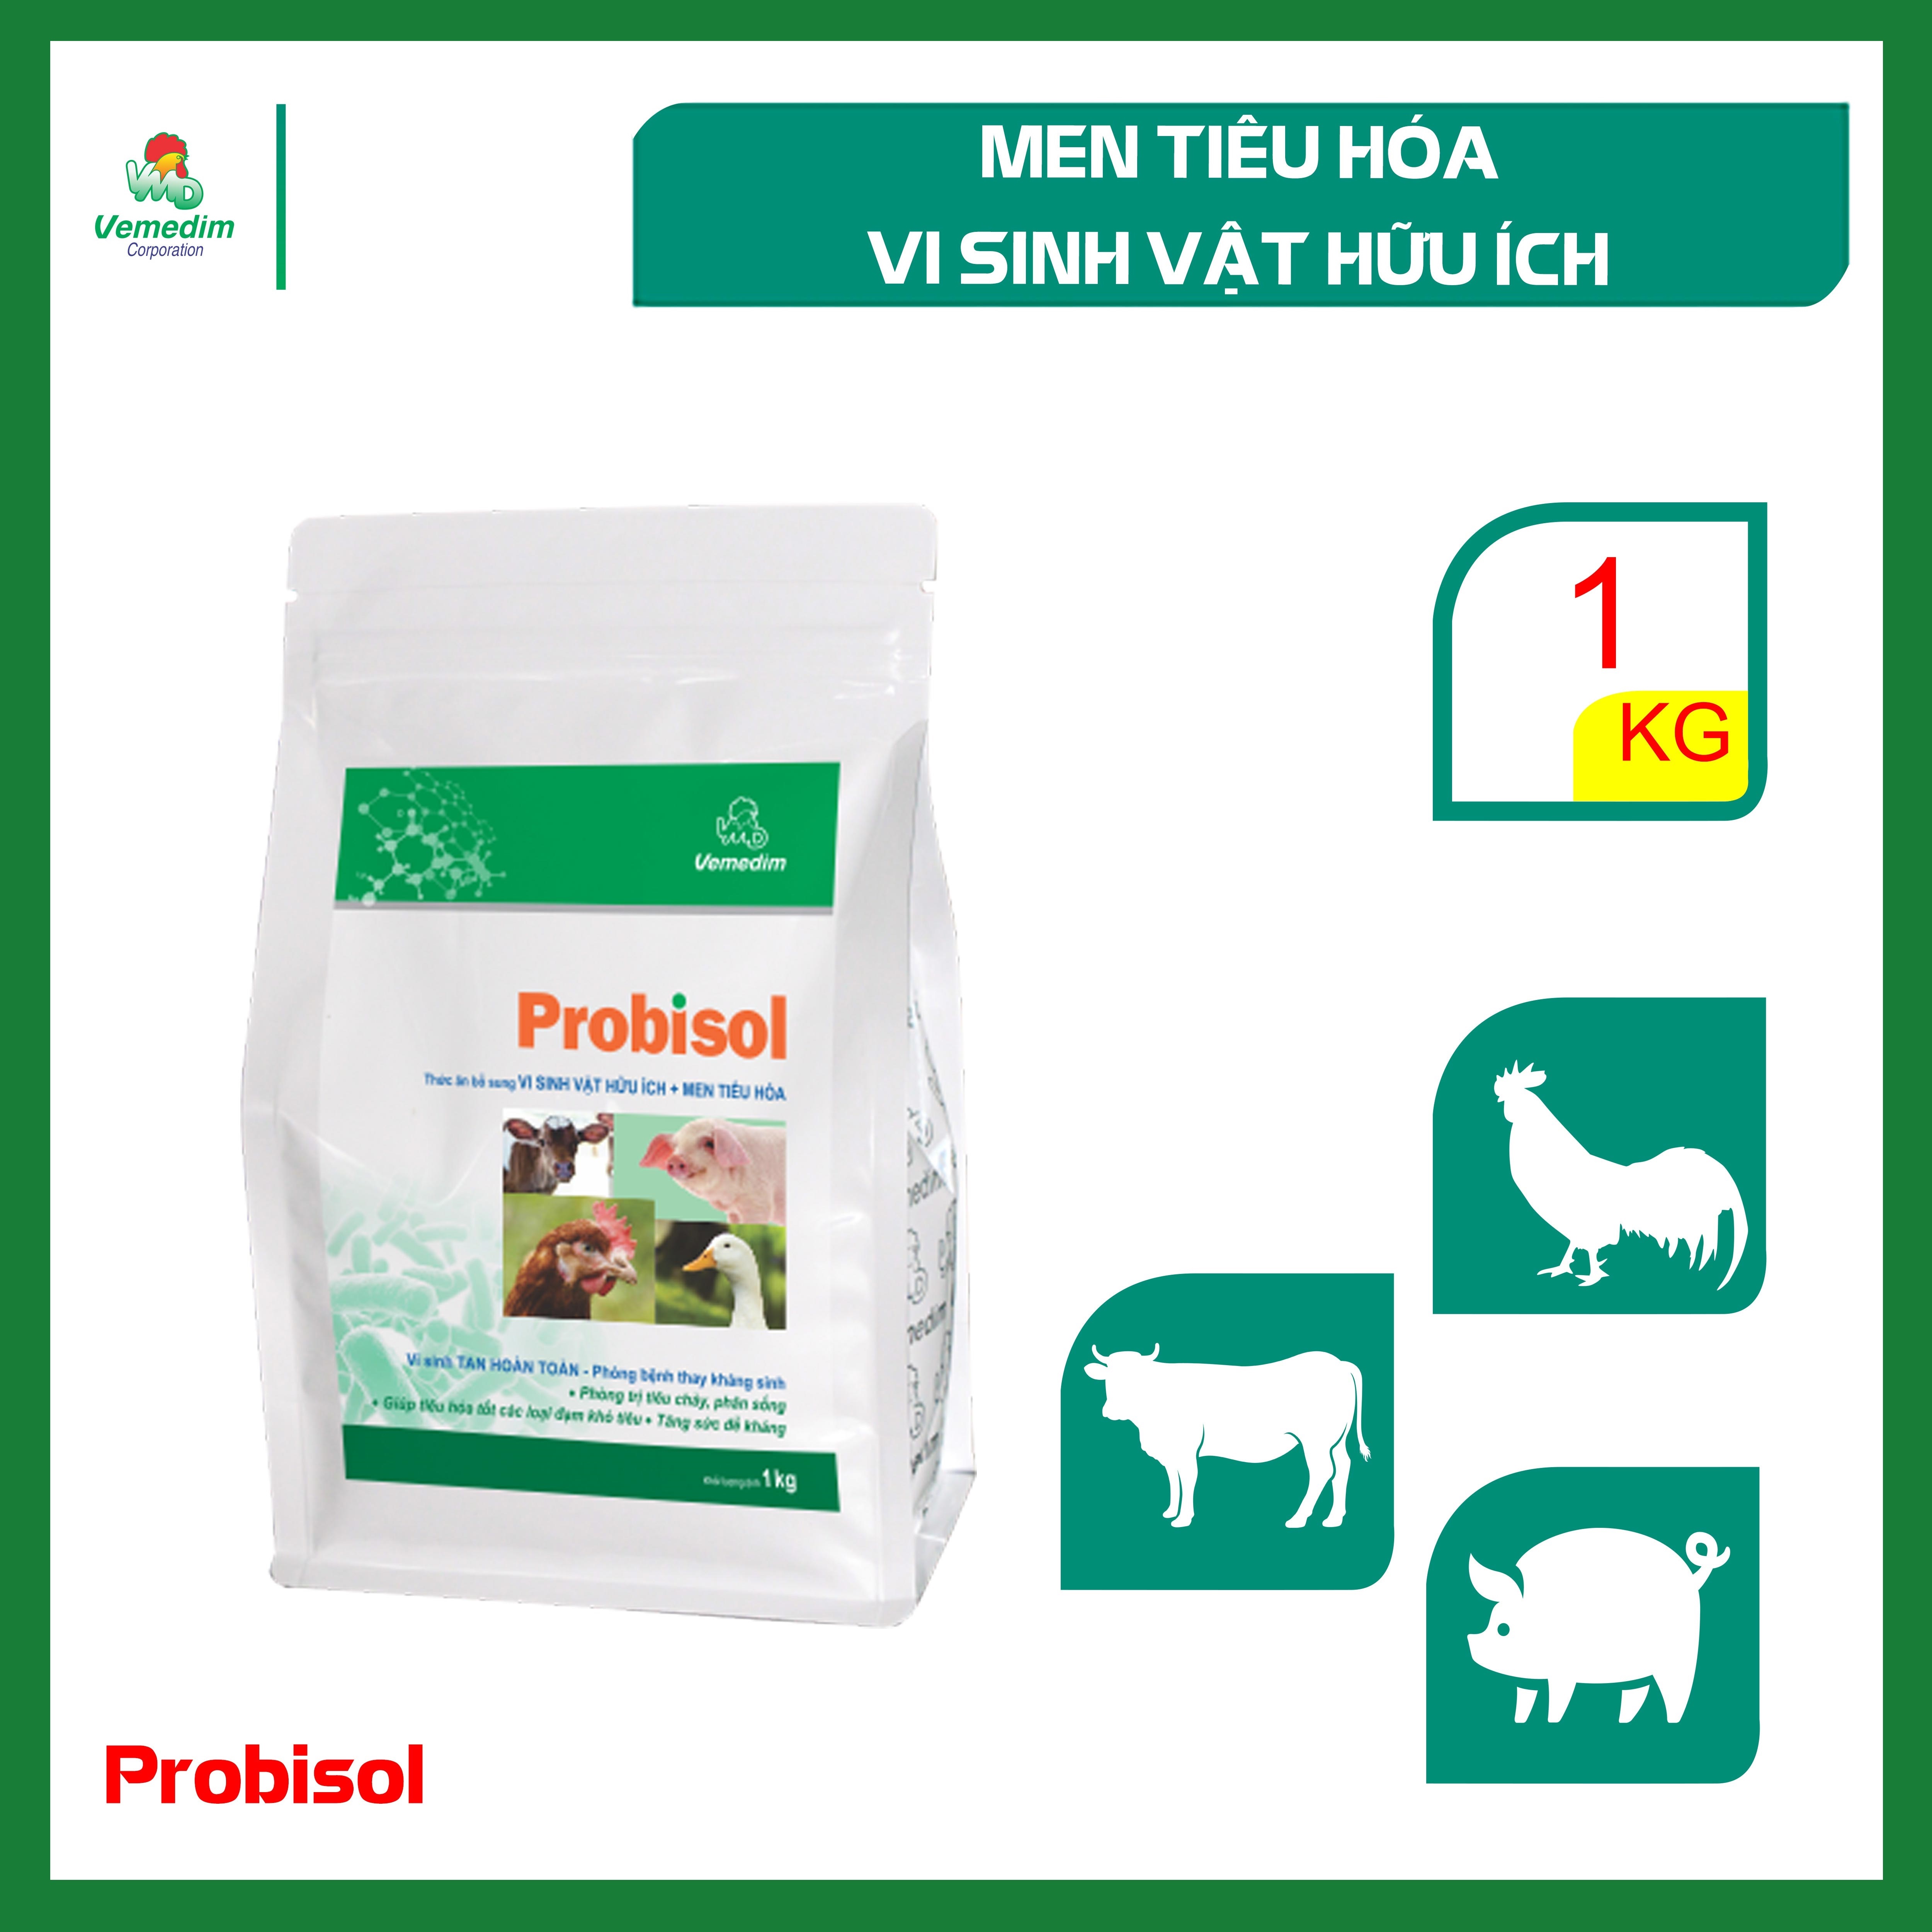 Probisol - Men tiêu hóa, Vi sinh vật hữu ích cho gia súc gia cầm, Kích thích tiêu hóa, tăng sức đề kháng, gói 1kg, sản phẩm Vemedim